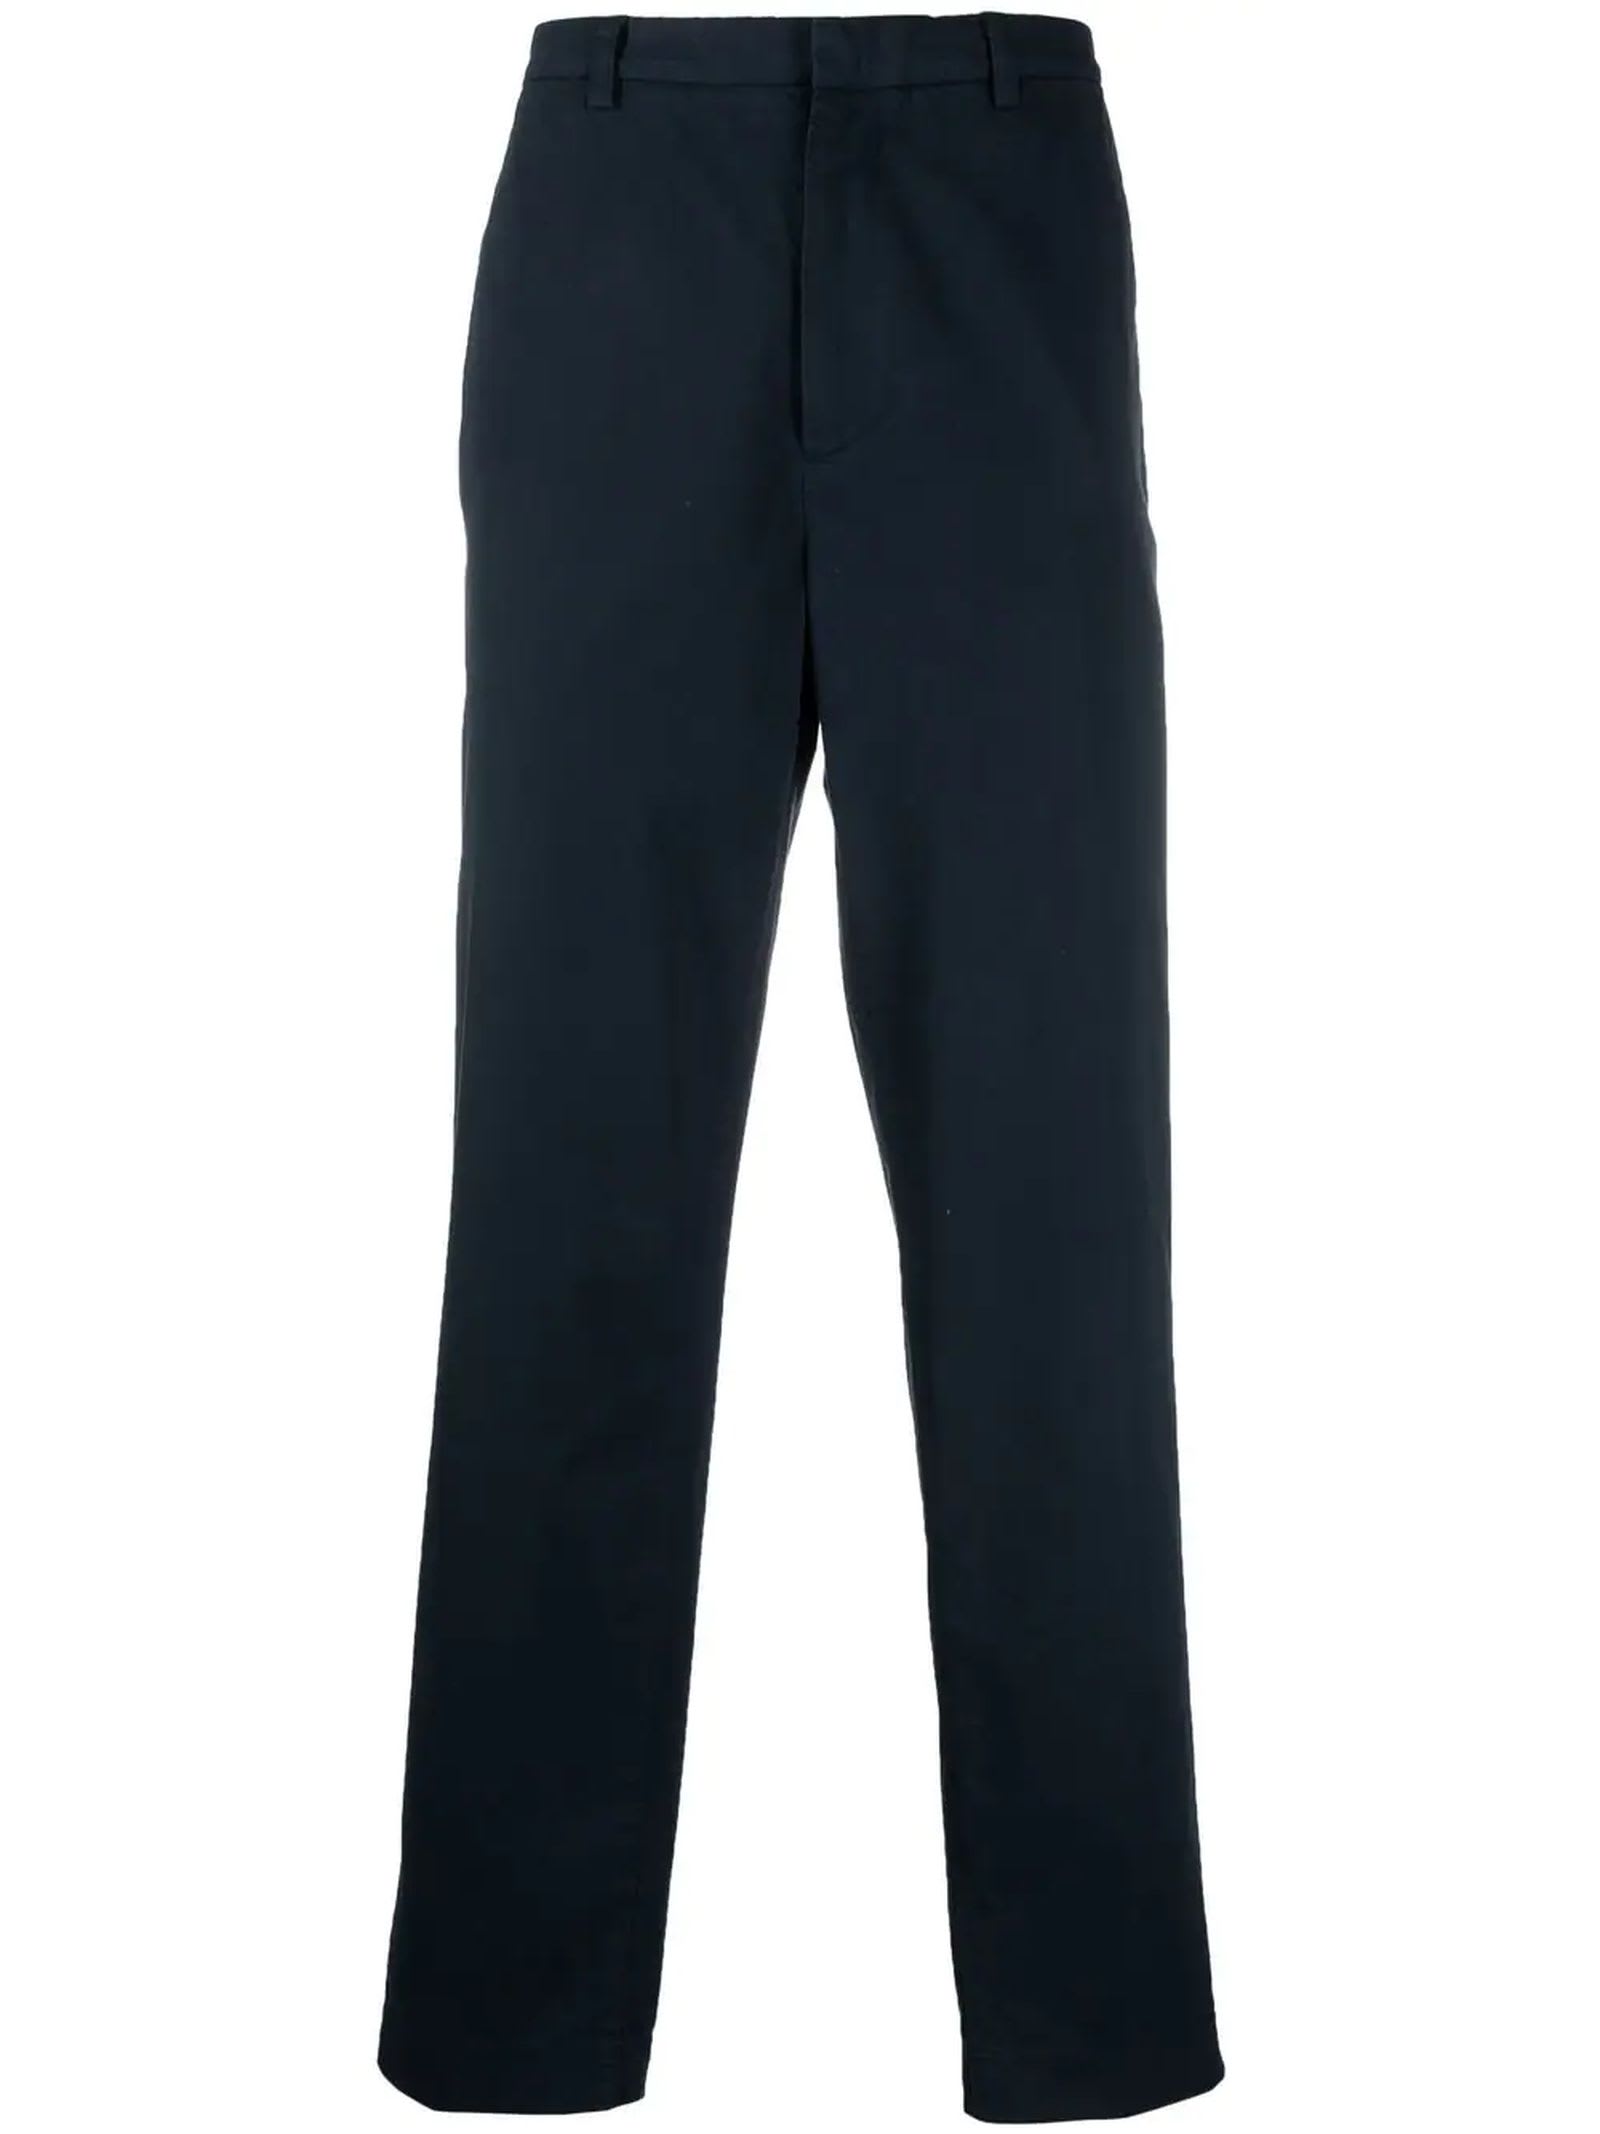 A.P.C. Navy Blue Cotton Trousers